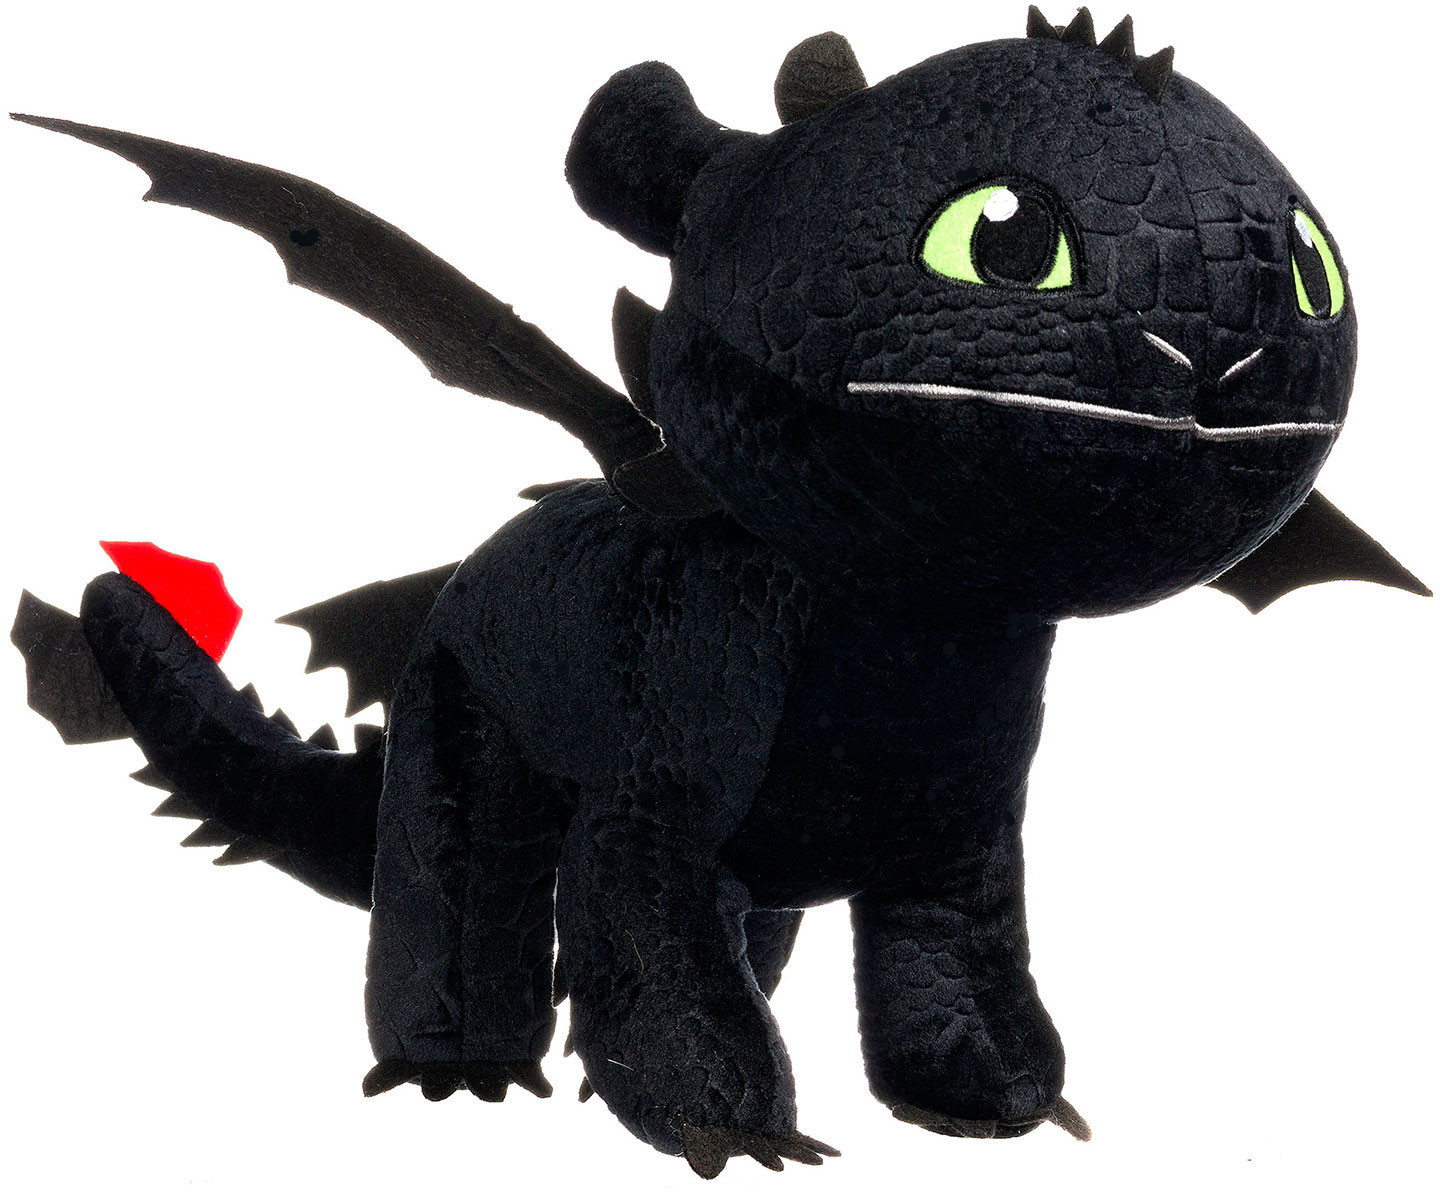 Drachenzähmen DreamWorks Dragons bei € Preisvergleich leicht ab Ohnezahn 70 cm 66,93 gemacht |